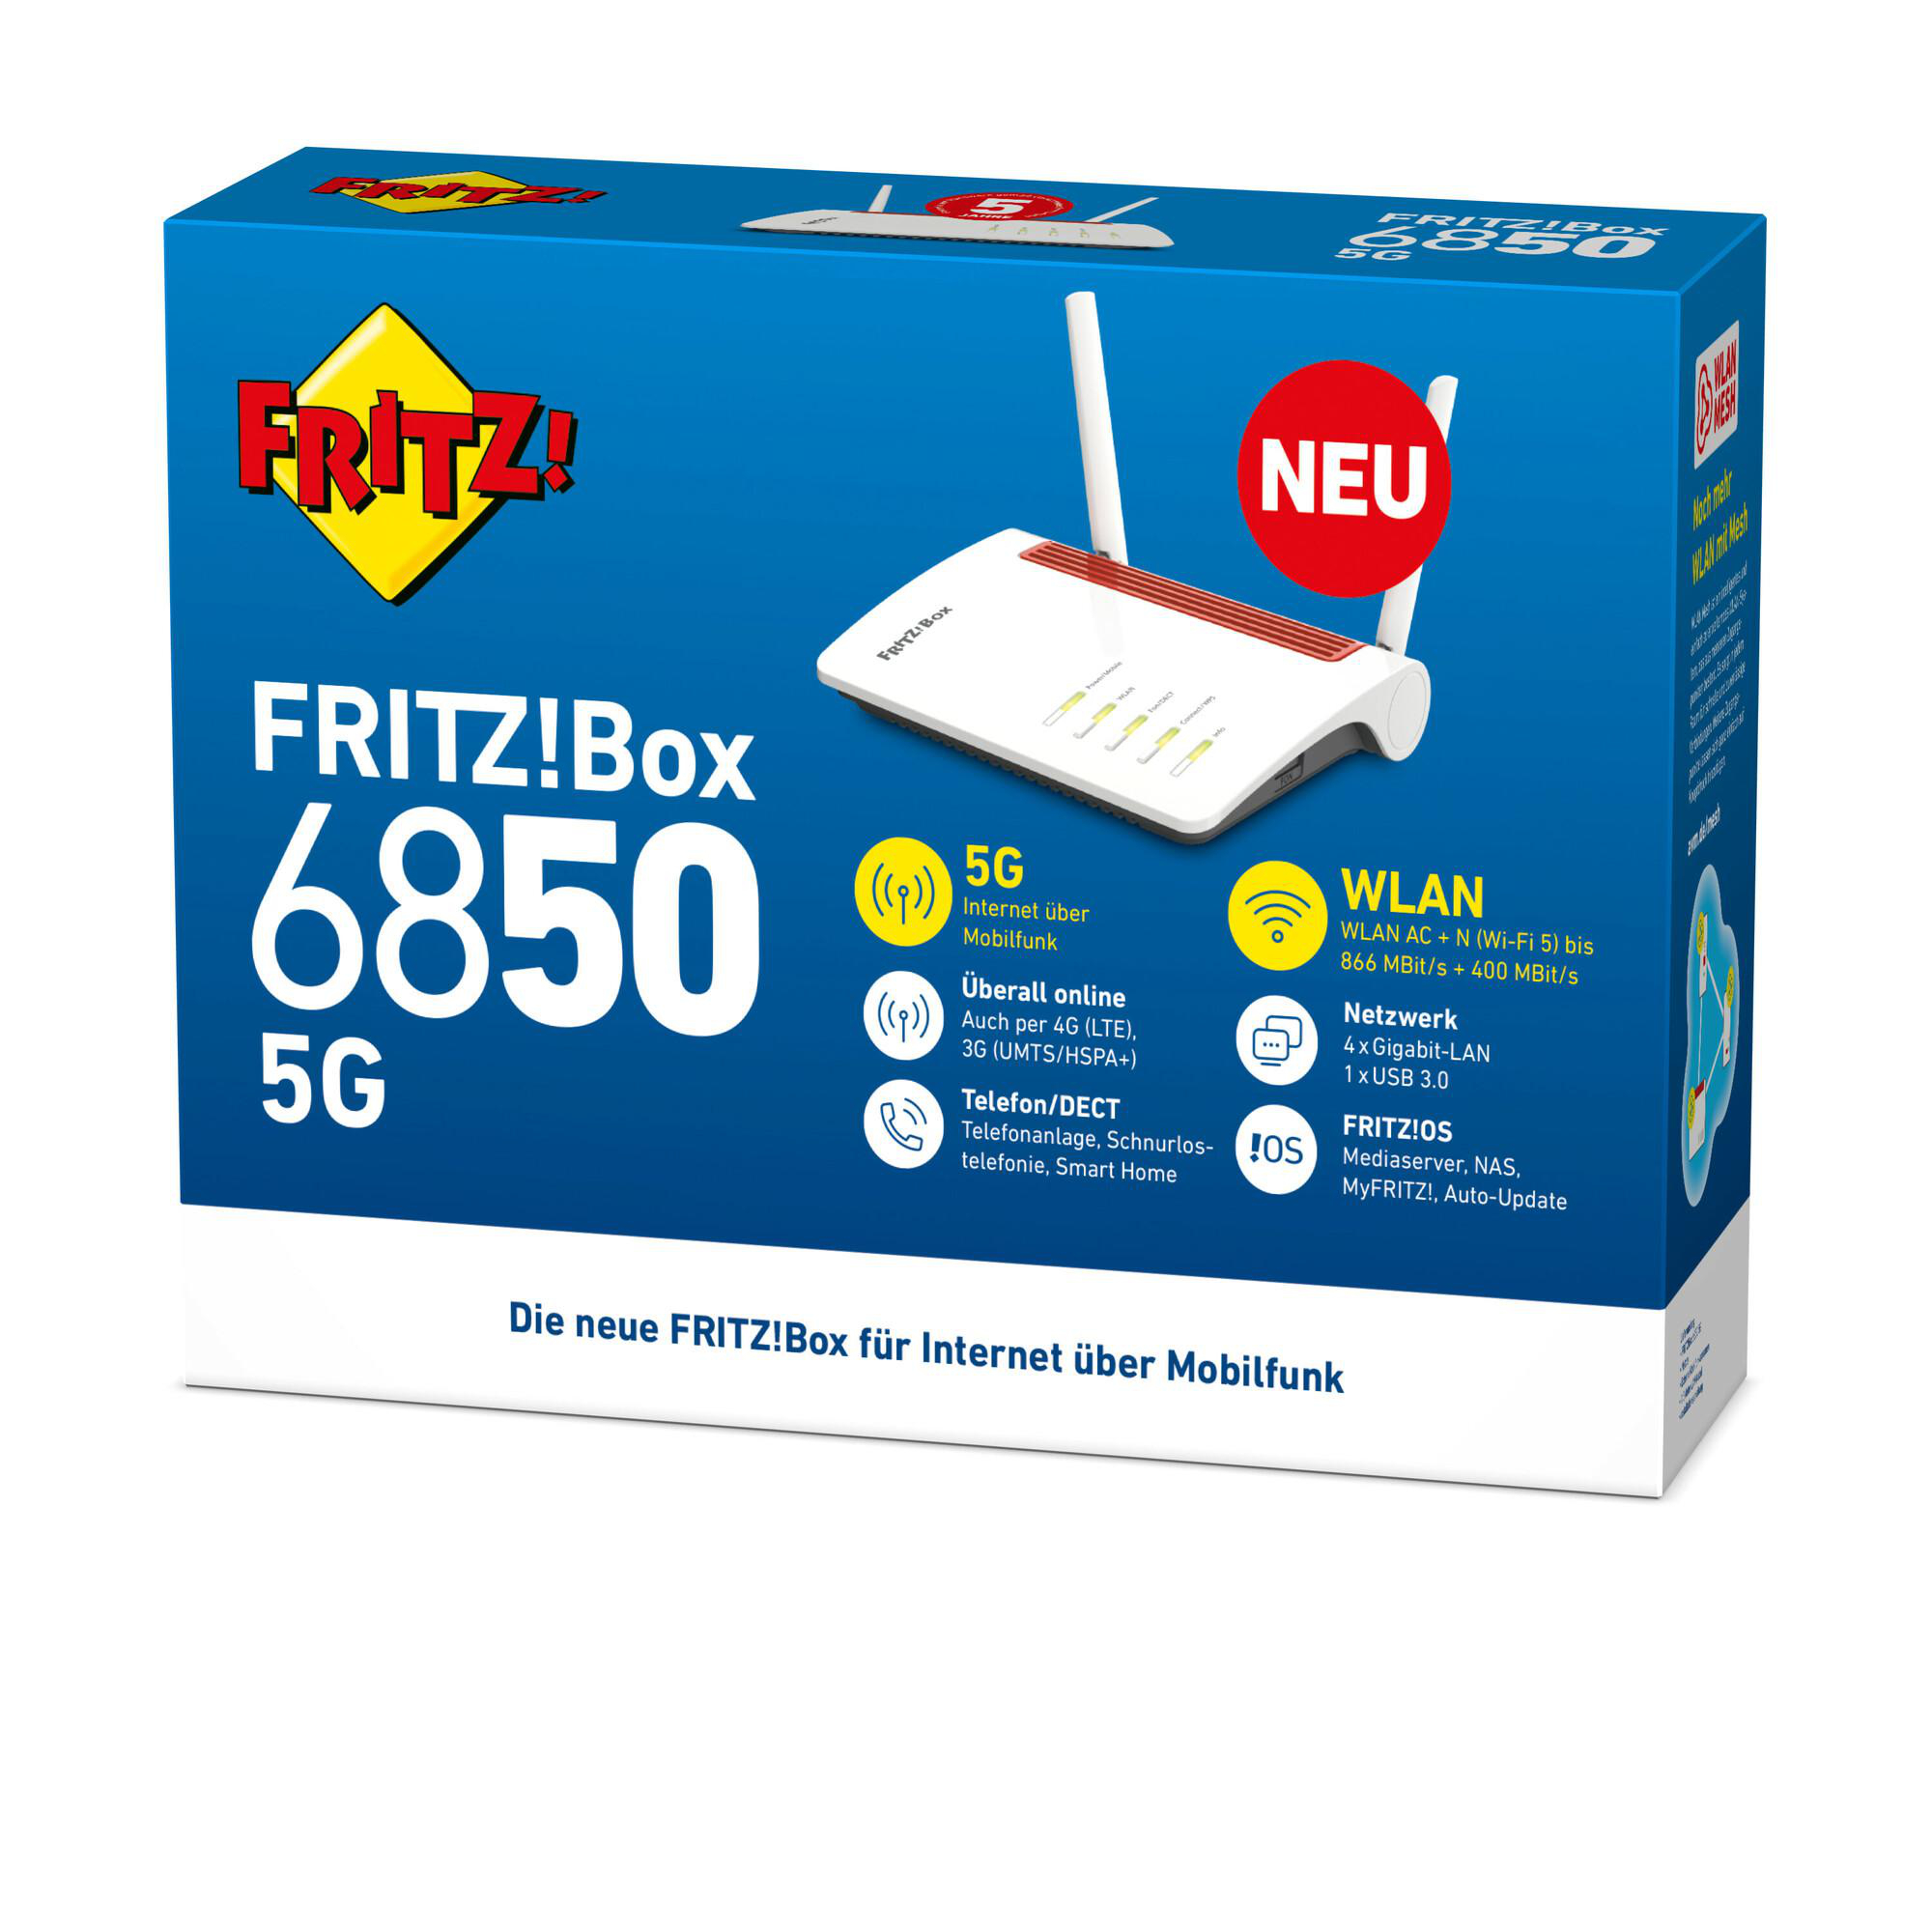 6850 1266 WLAN FRITZ!Box Mbit/s Router 5G AVM